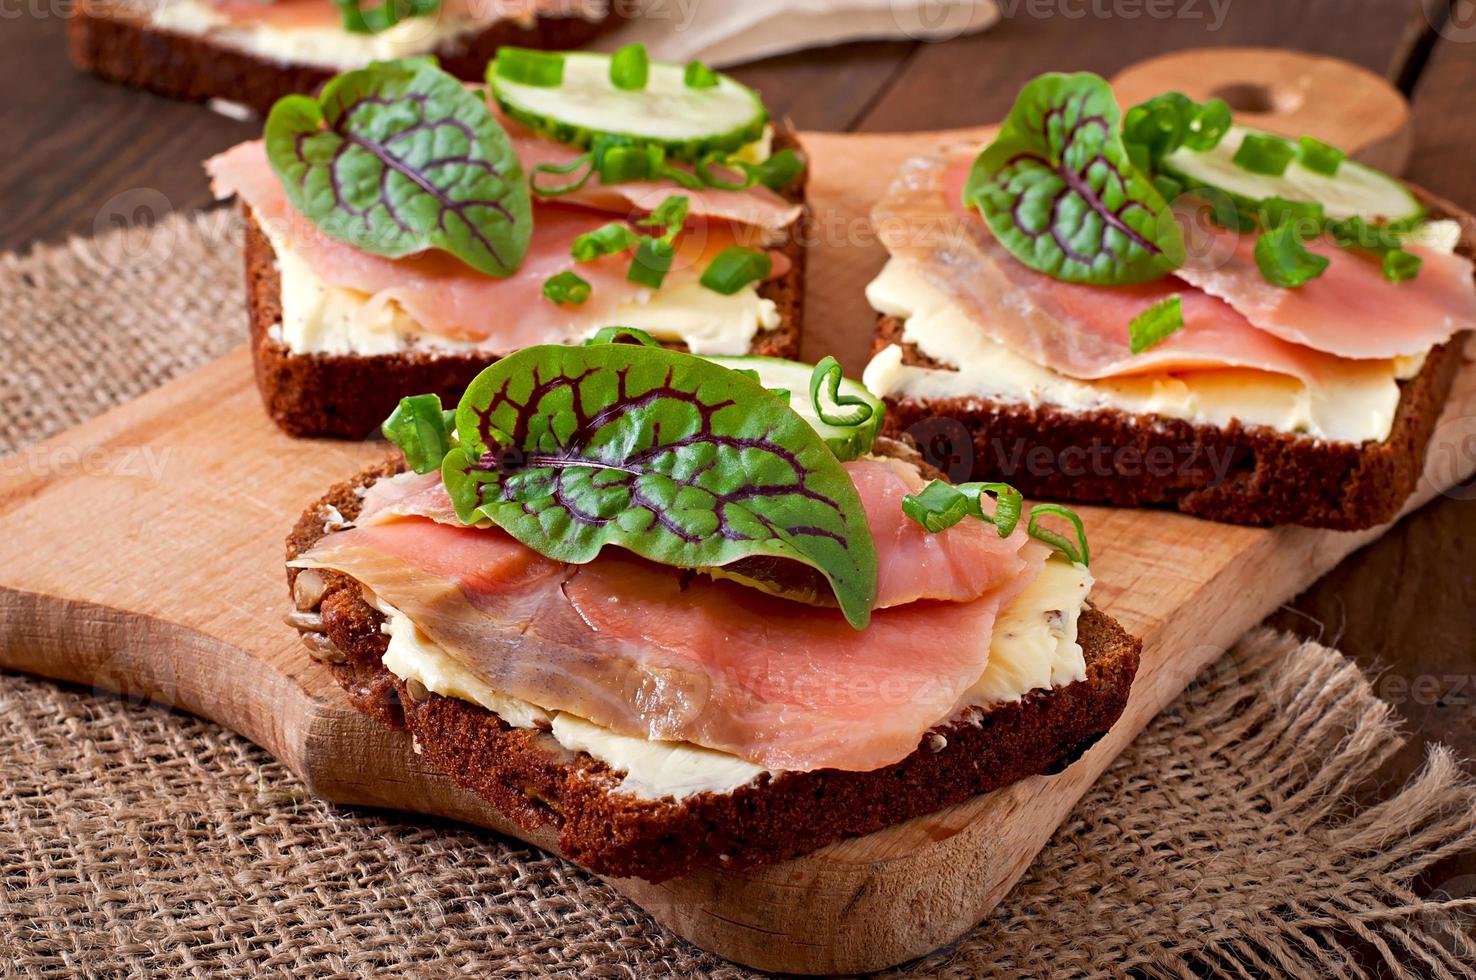 pequenos lanches sanduíches com salmão salgado foto